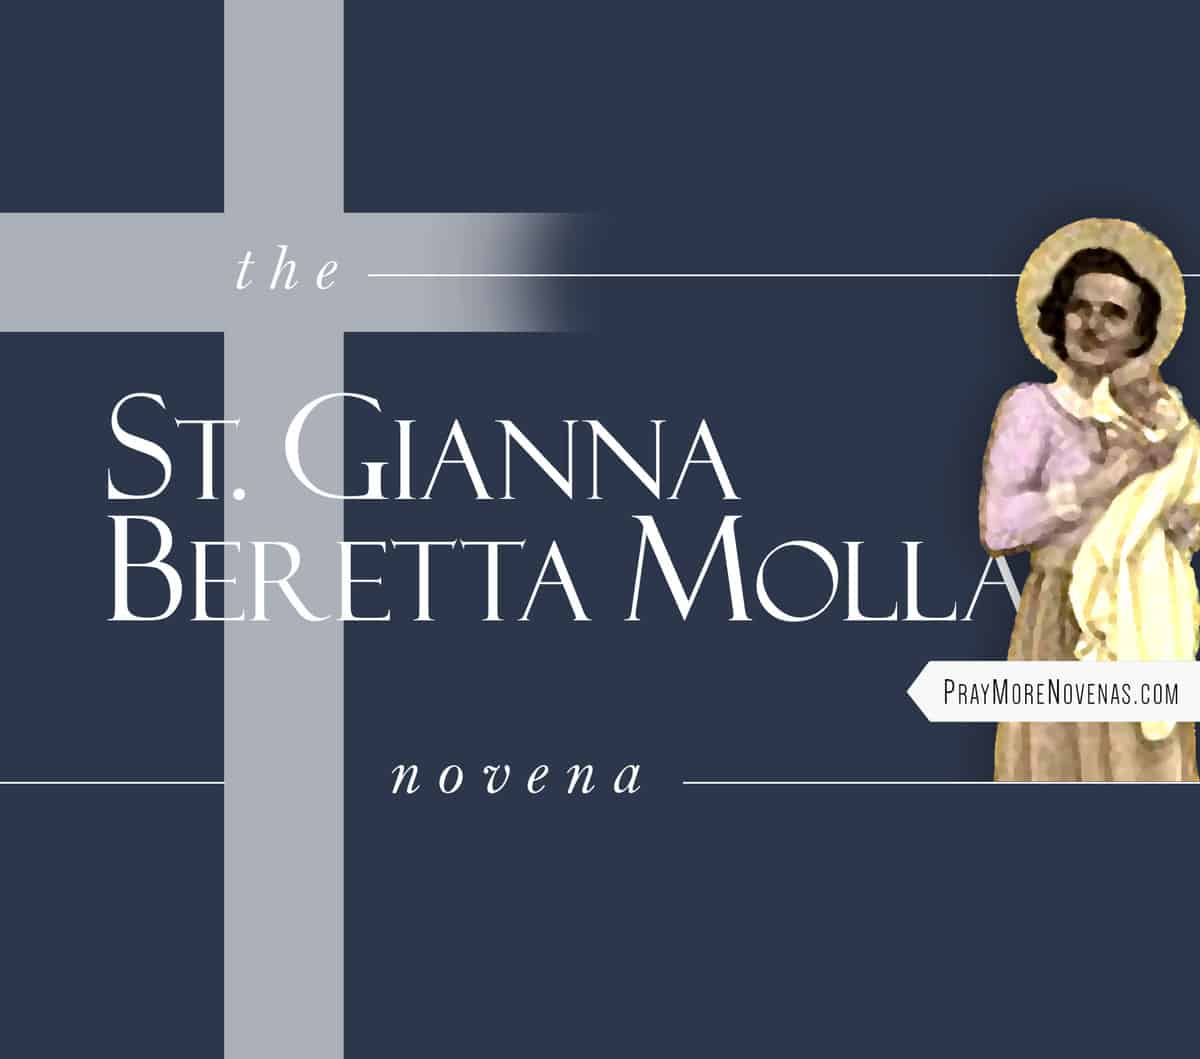 St. Gianna Beretta Molla Novena - Pray More Novenas - Novena Prayers